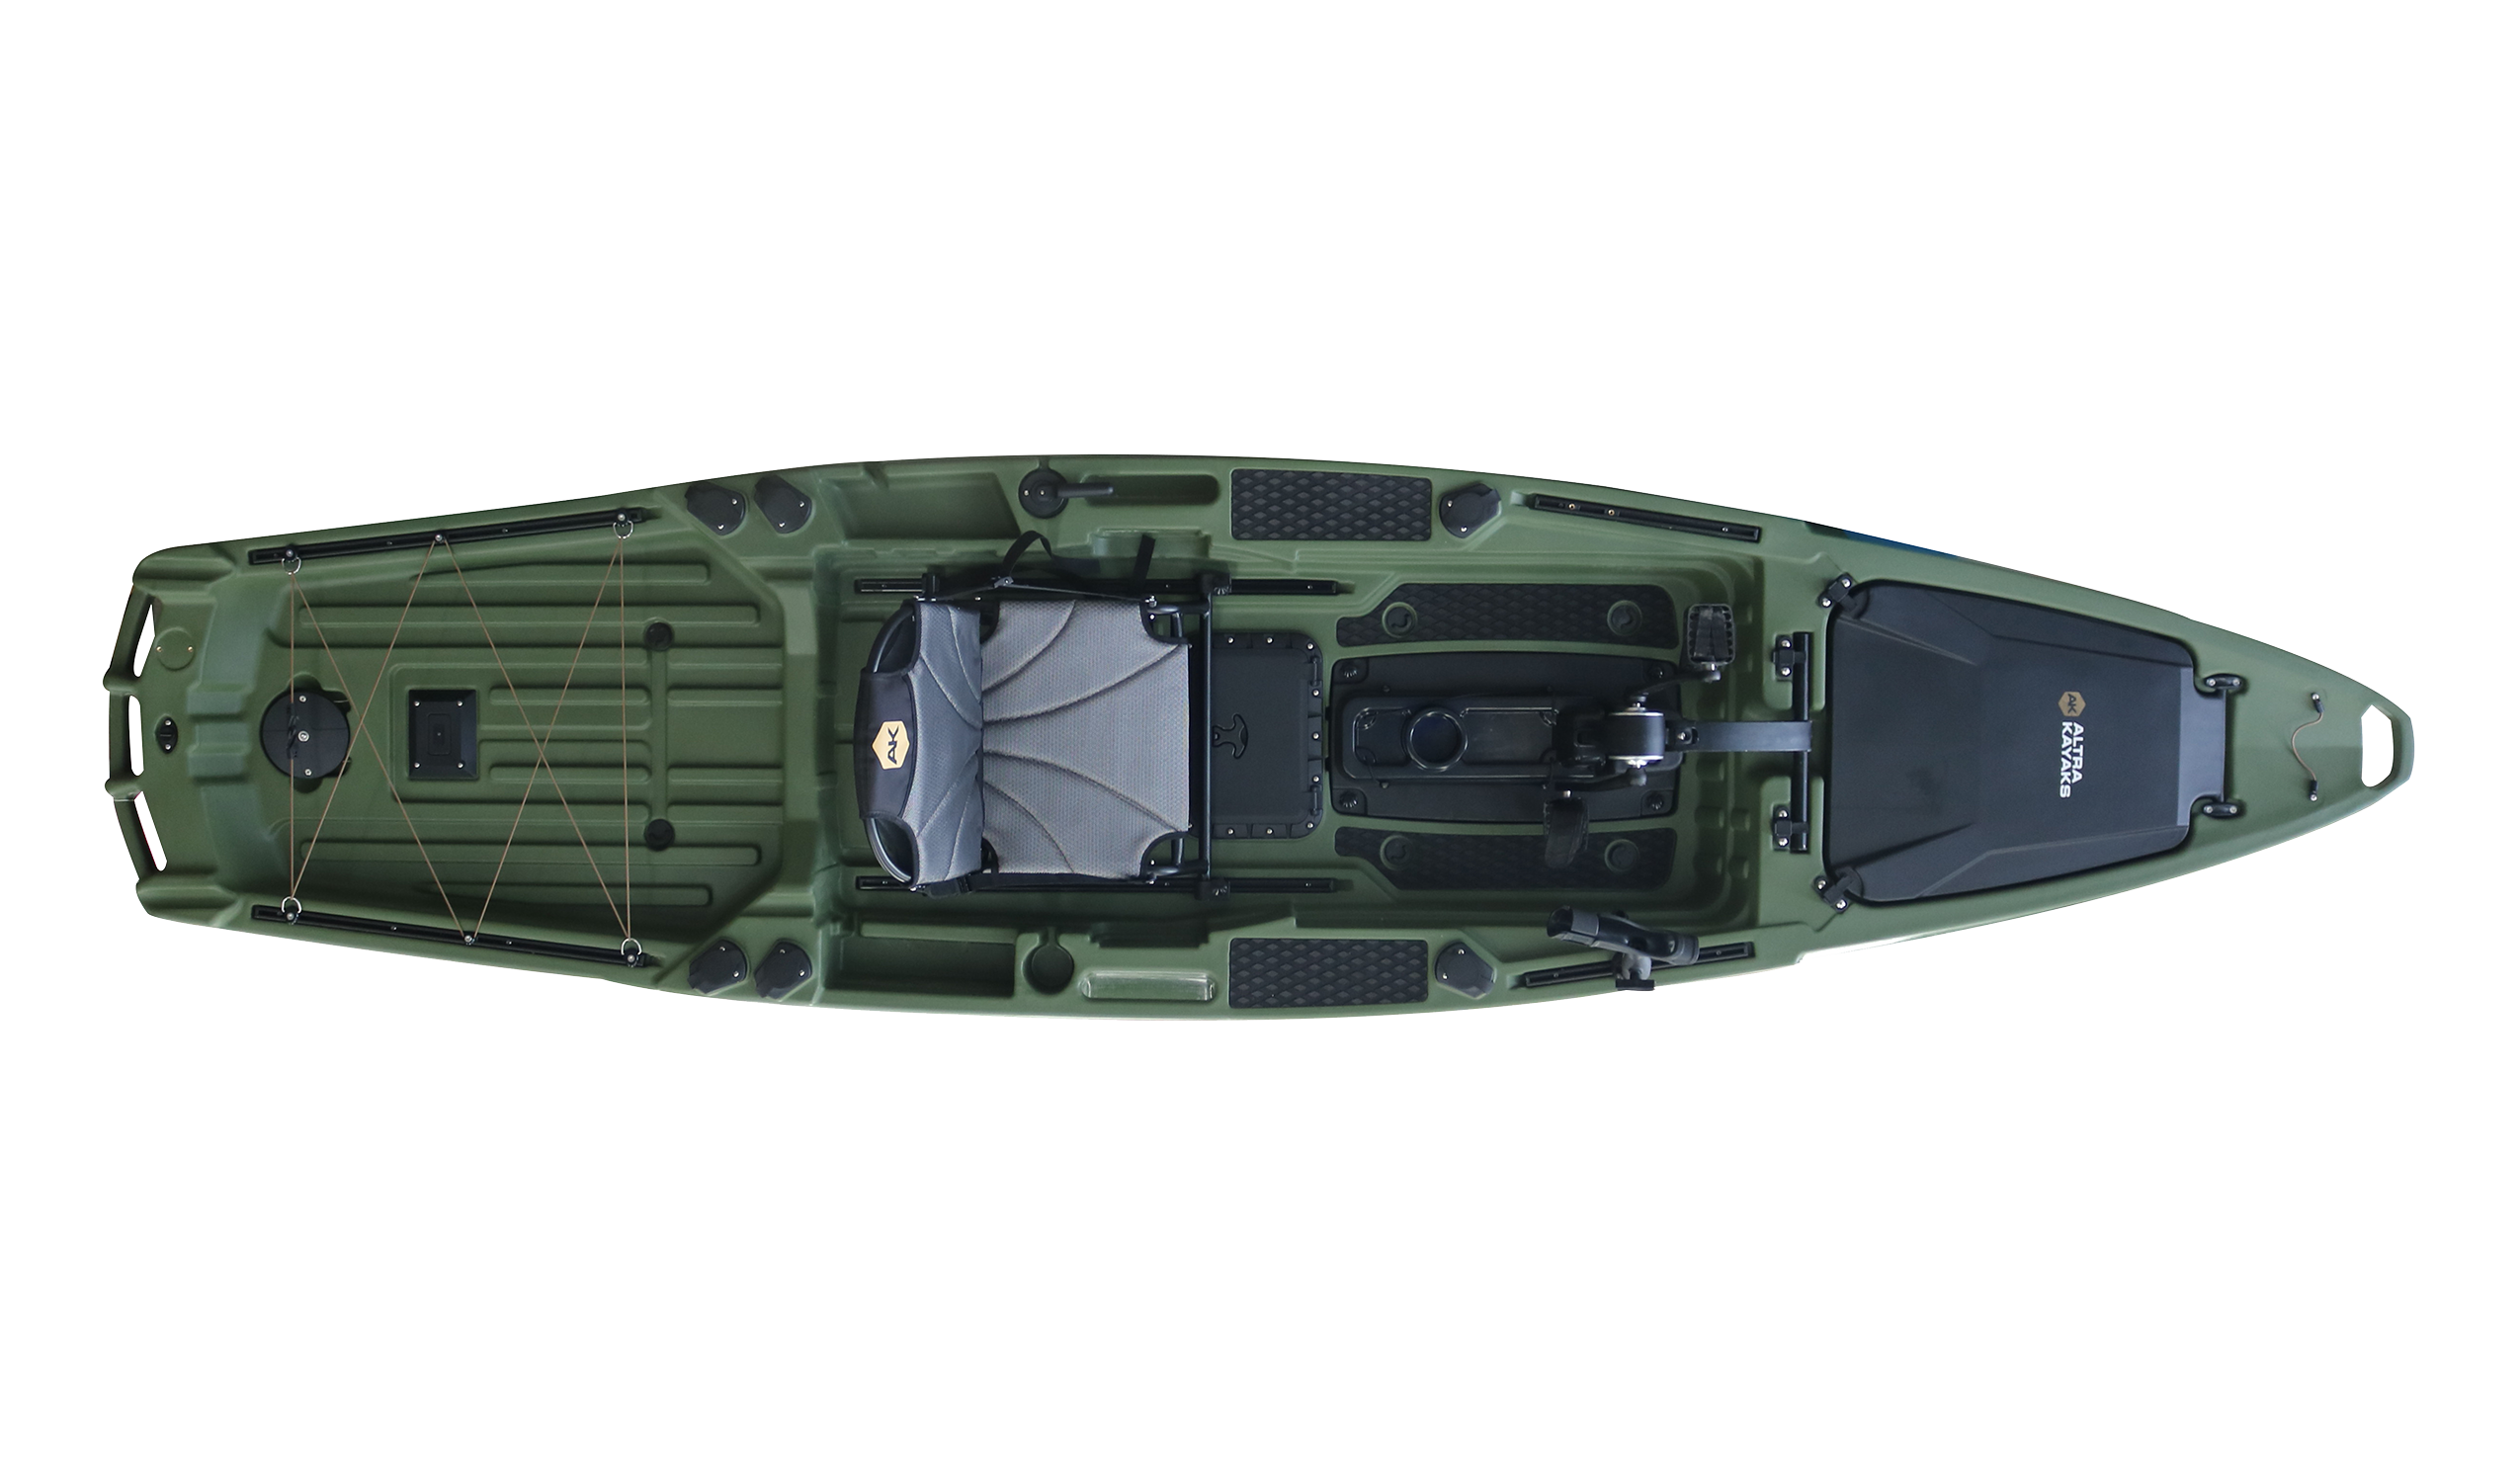 Promozione PD 390-green: kayak + sedile girevole fino al 10 marzo